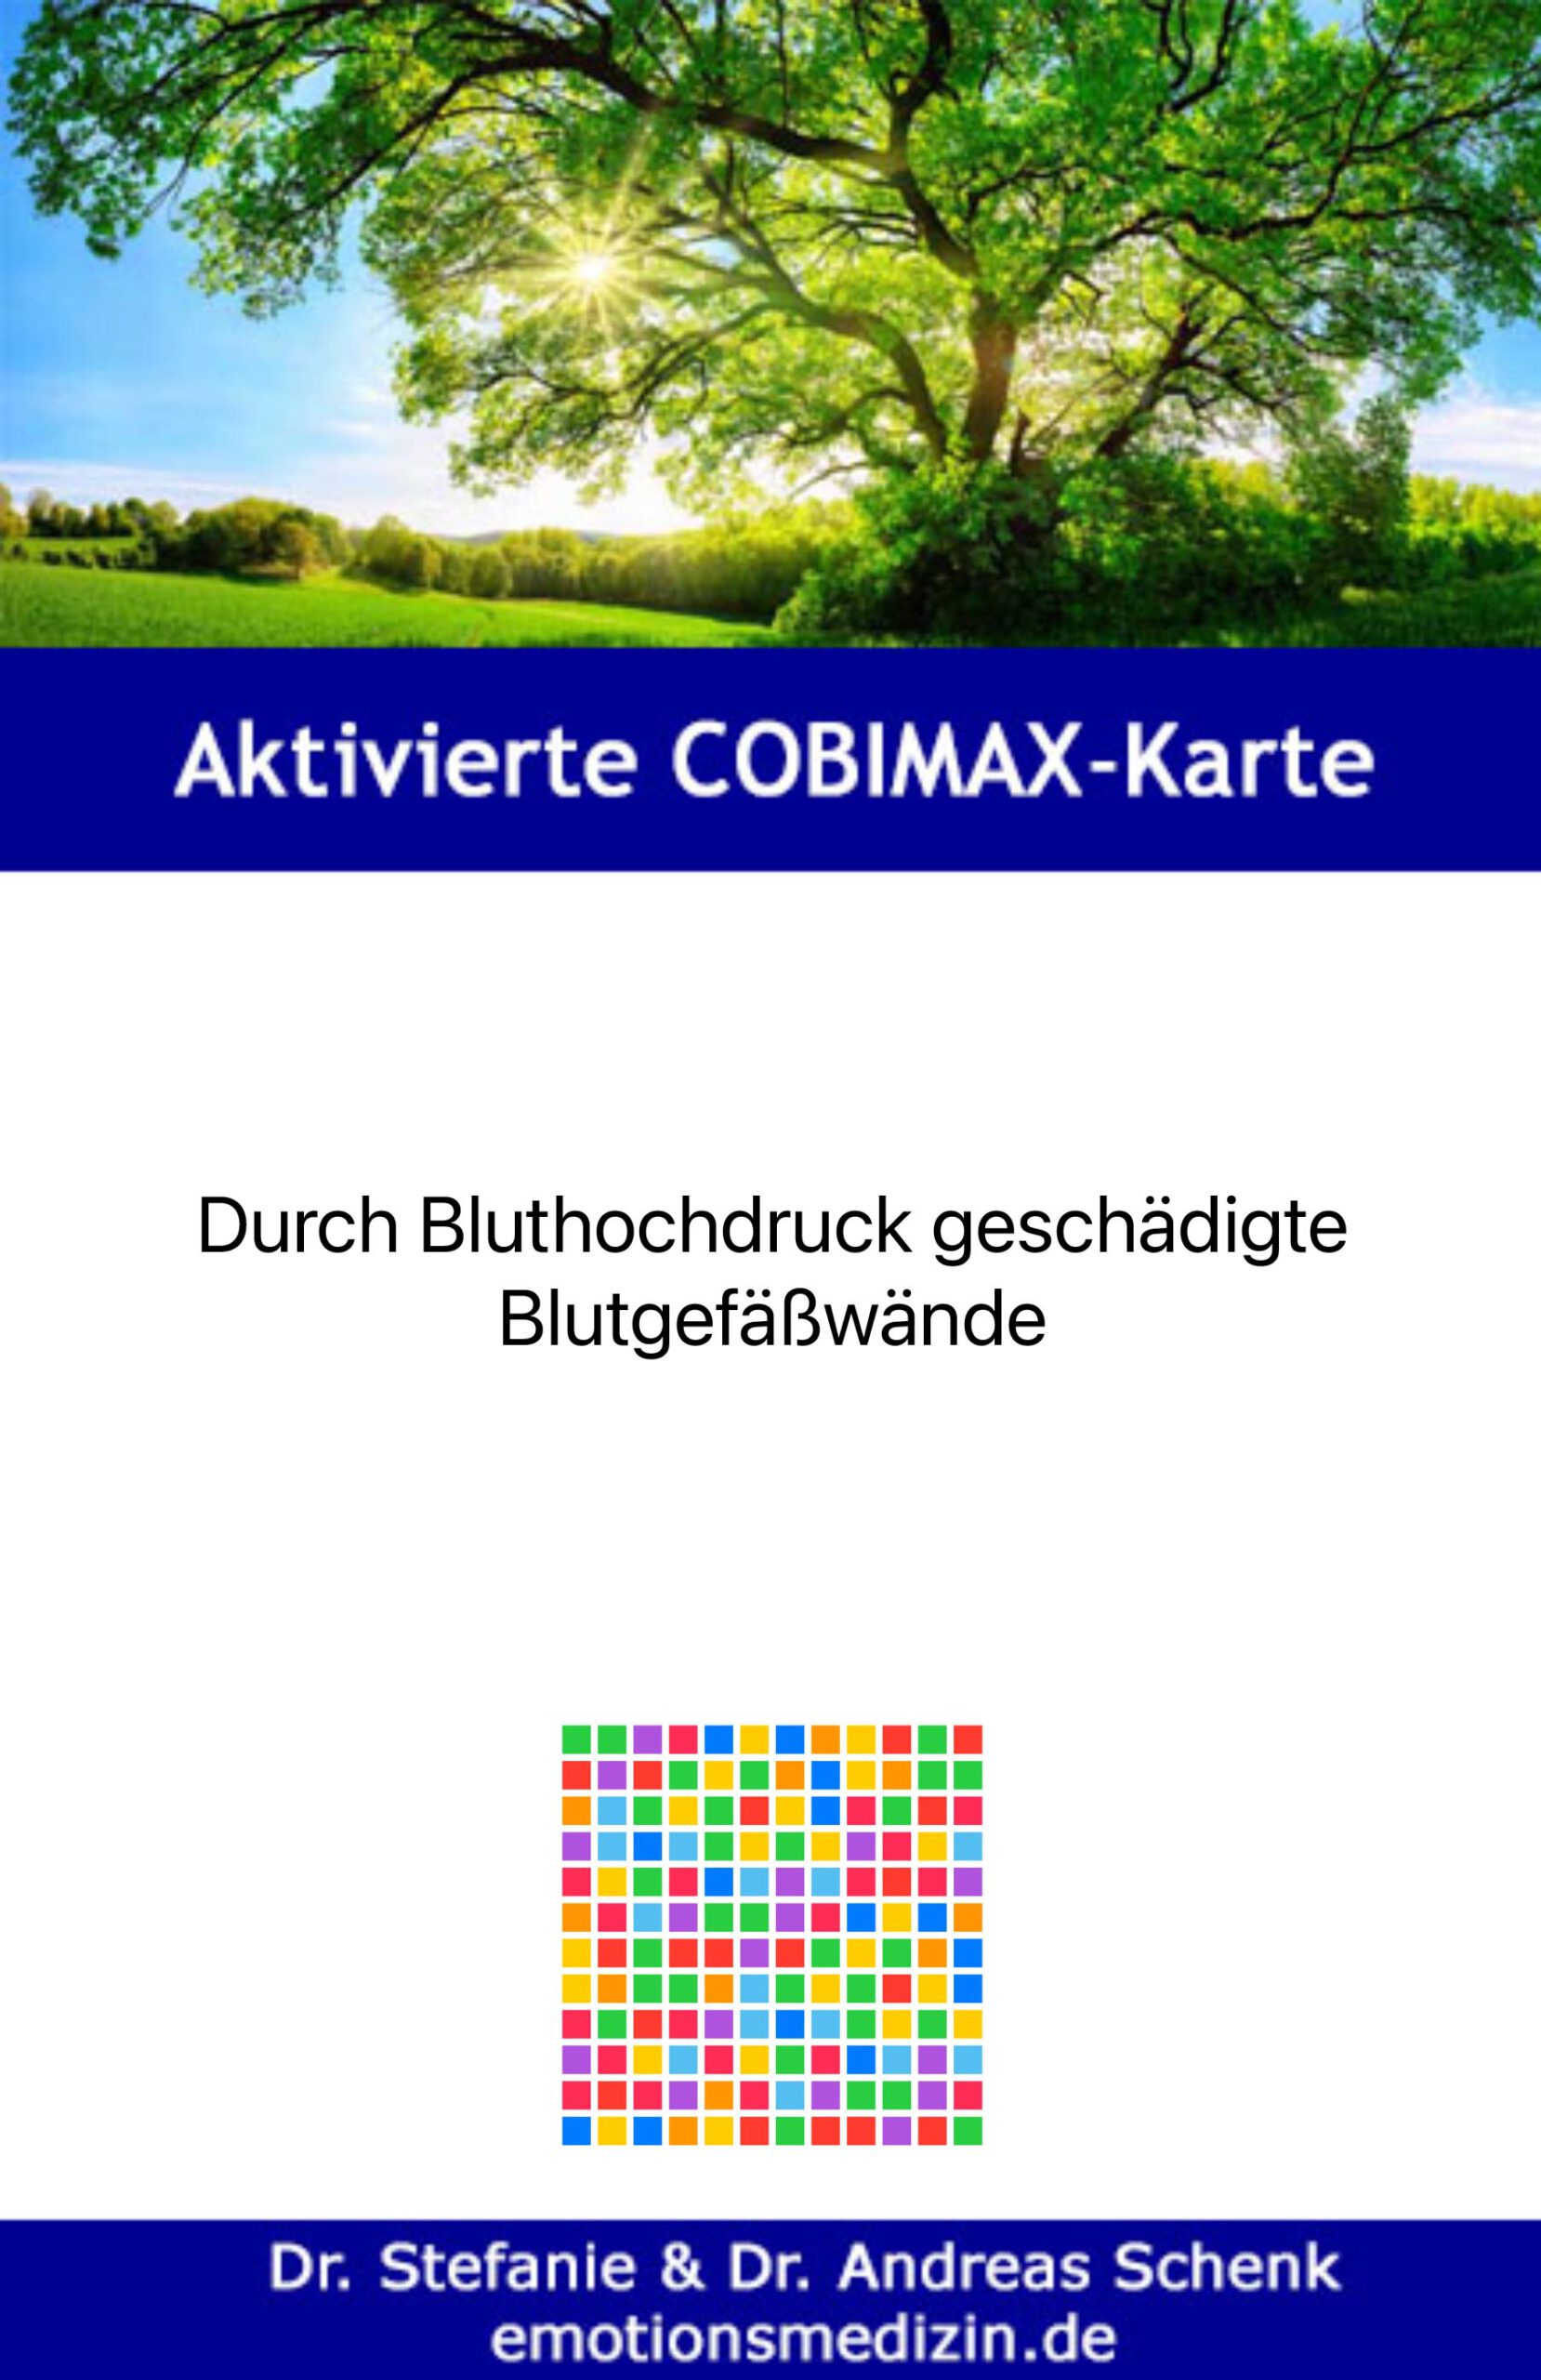 COBIMAX Beispielkarte Bluthochdruck